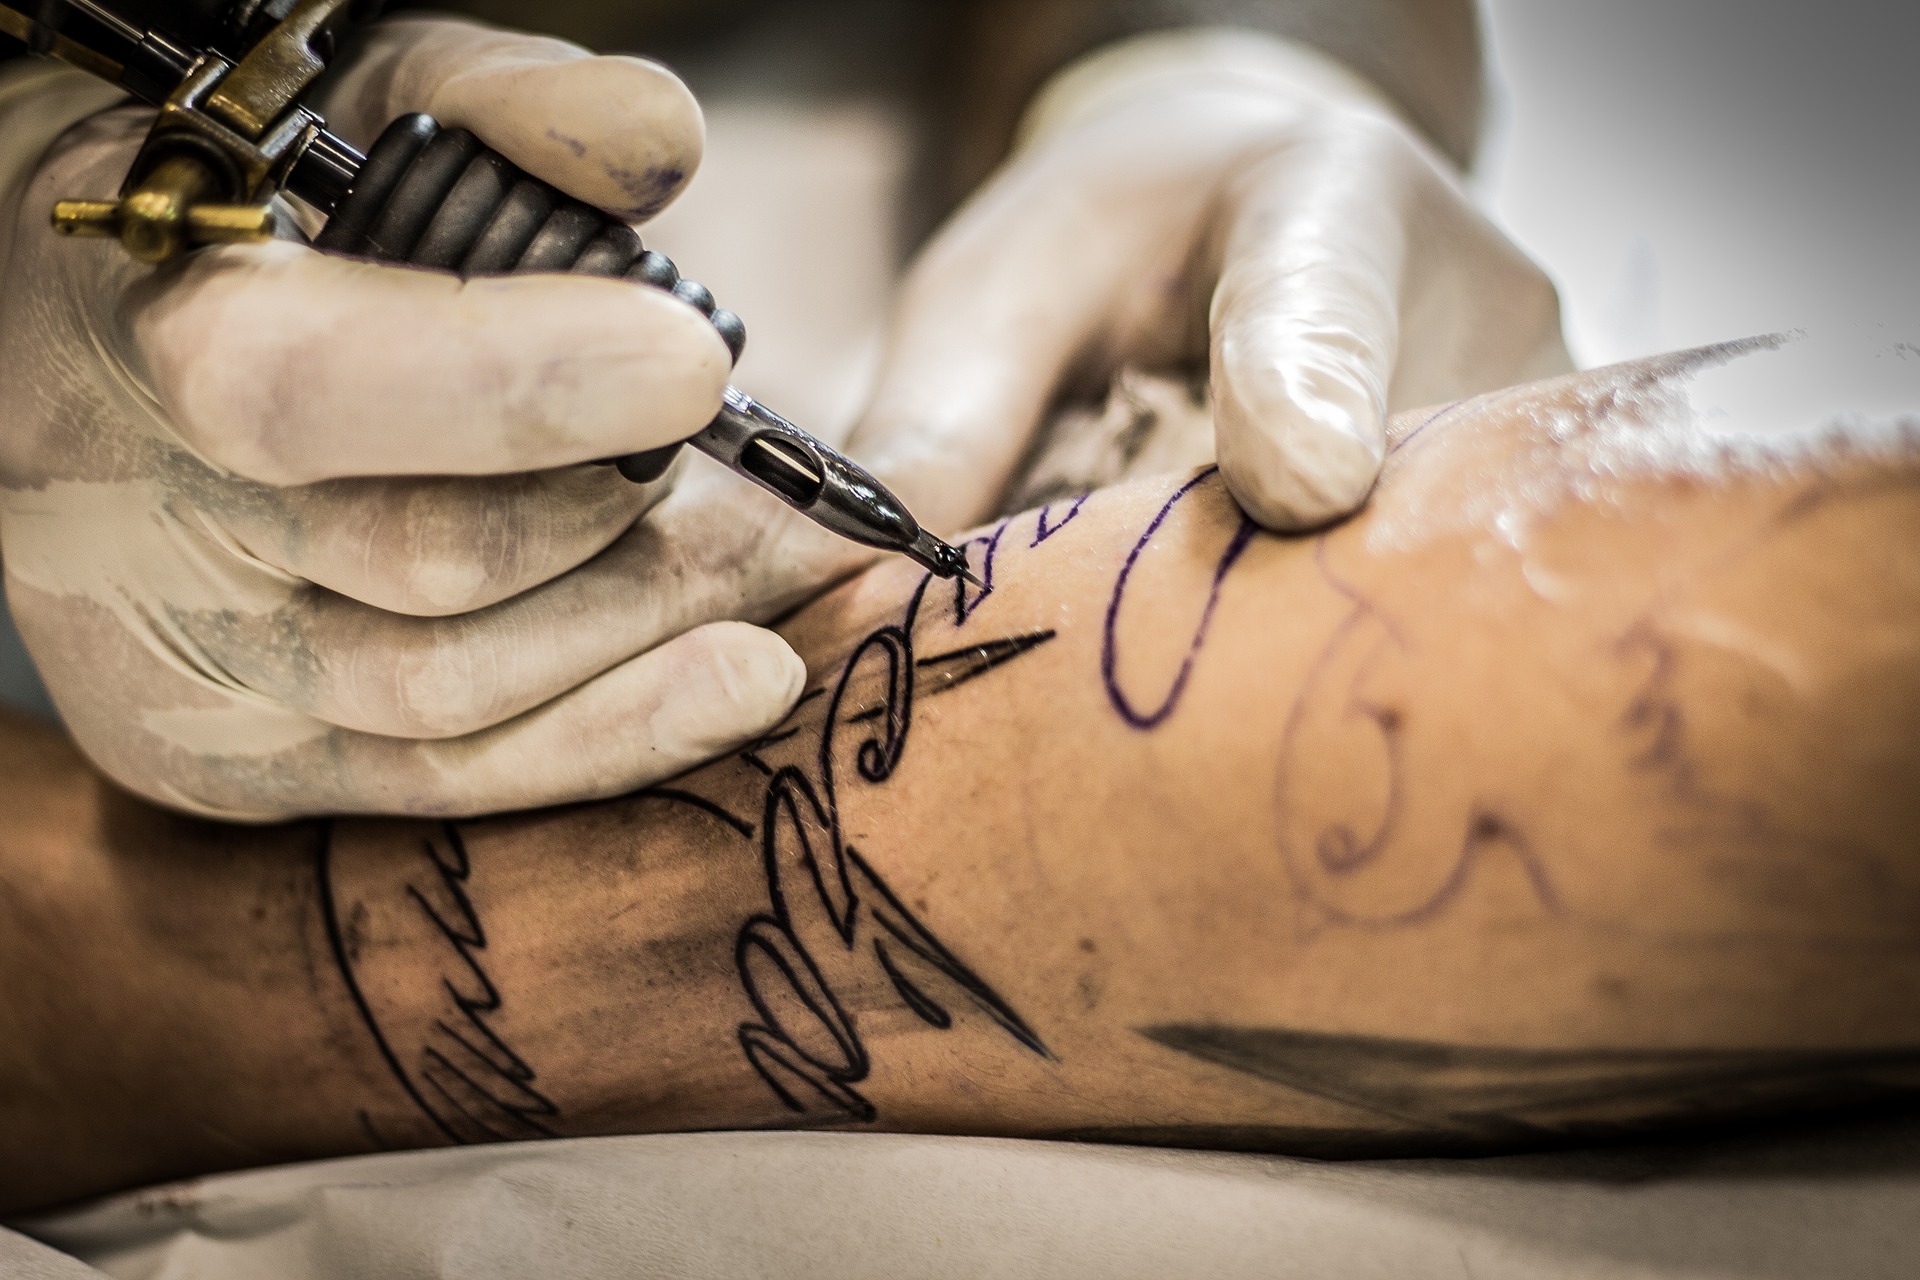 Tatuajes y piercings: riesgos a flor de piel